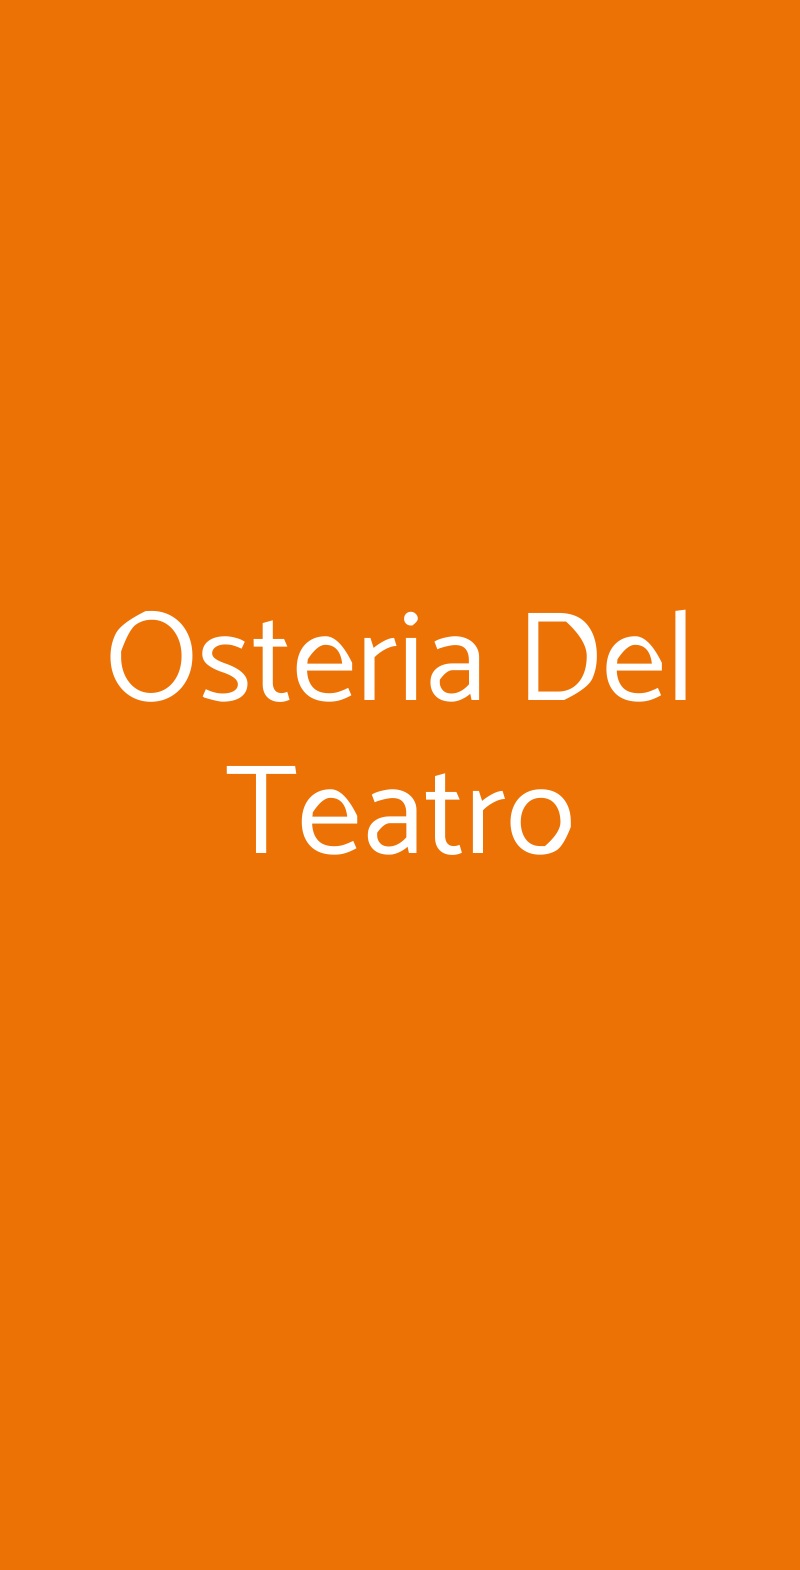 Osteria Del Teatro Cortona menù 1 pagina